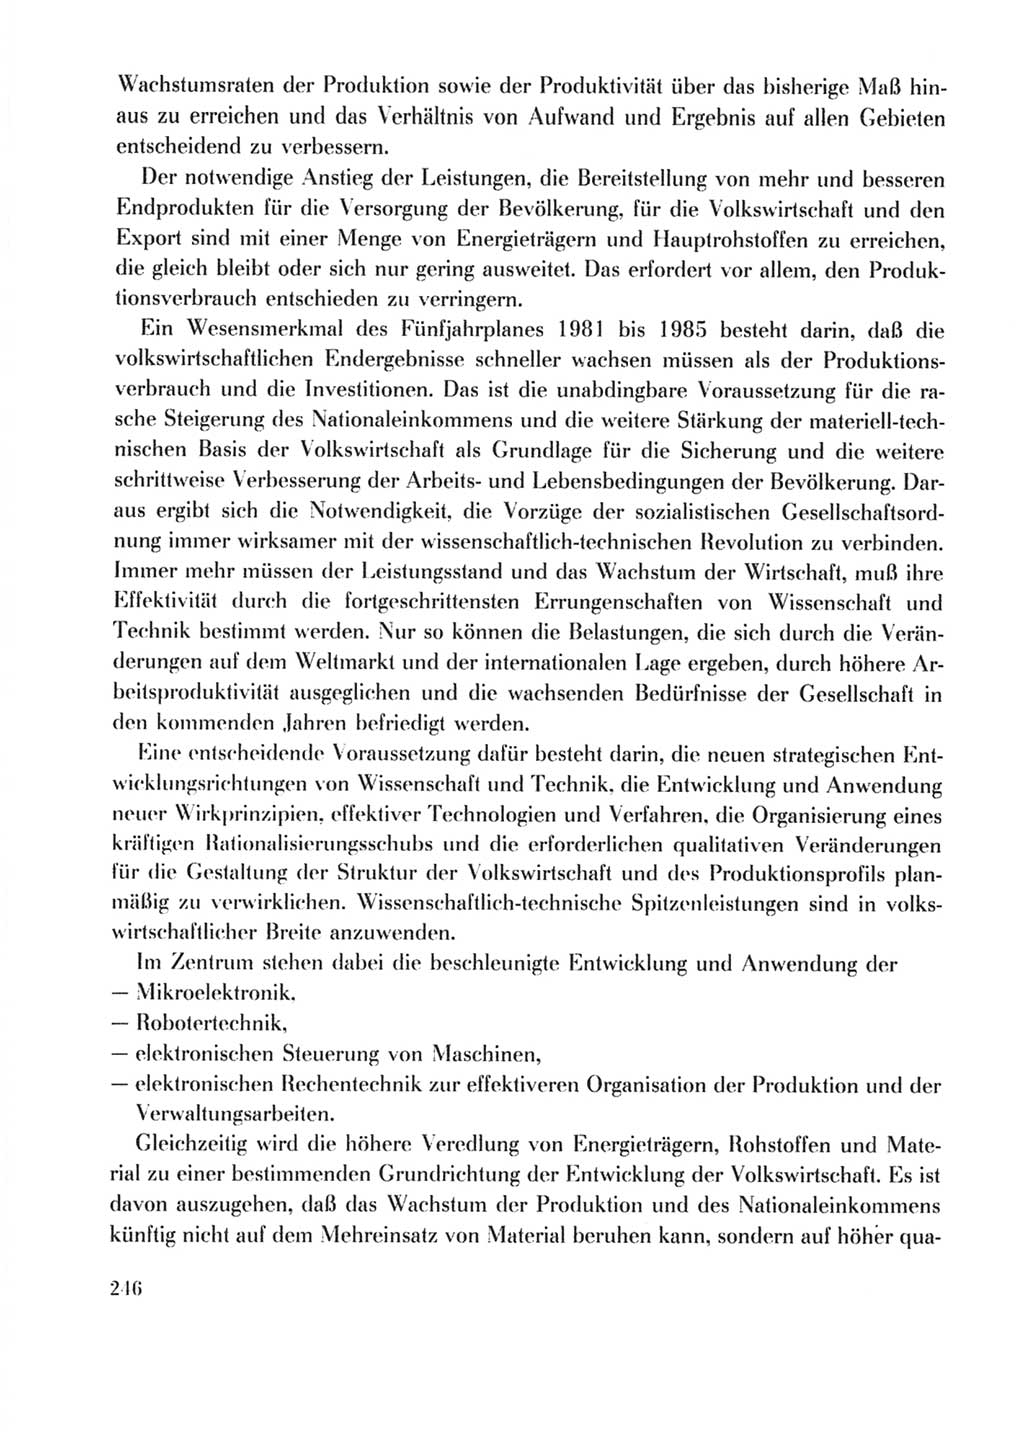 Protokoll der Verhandlungen des Ⅹ. Parteitages der Sozialistischen Einheitspartei Deutschlands (SED) [Deutsche Demokratische Republik (DDR)] 1981, Band 2, Seite 246 (Prot. Verh. Ⅹ. PT SED DDR 1981, Bd. 2, S. 246)